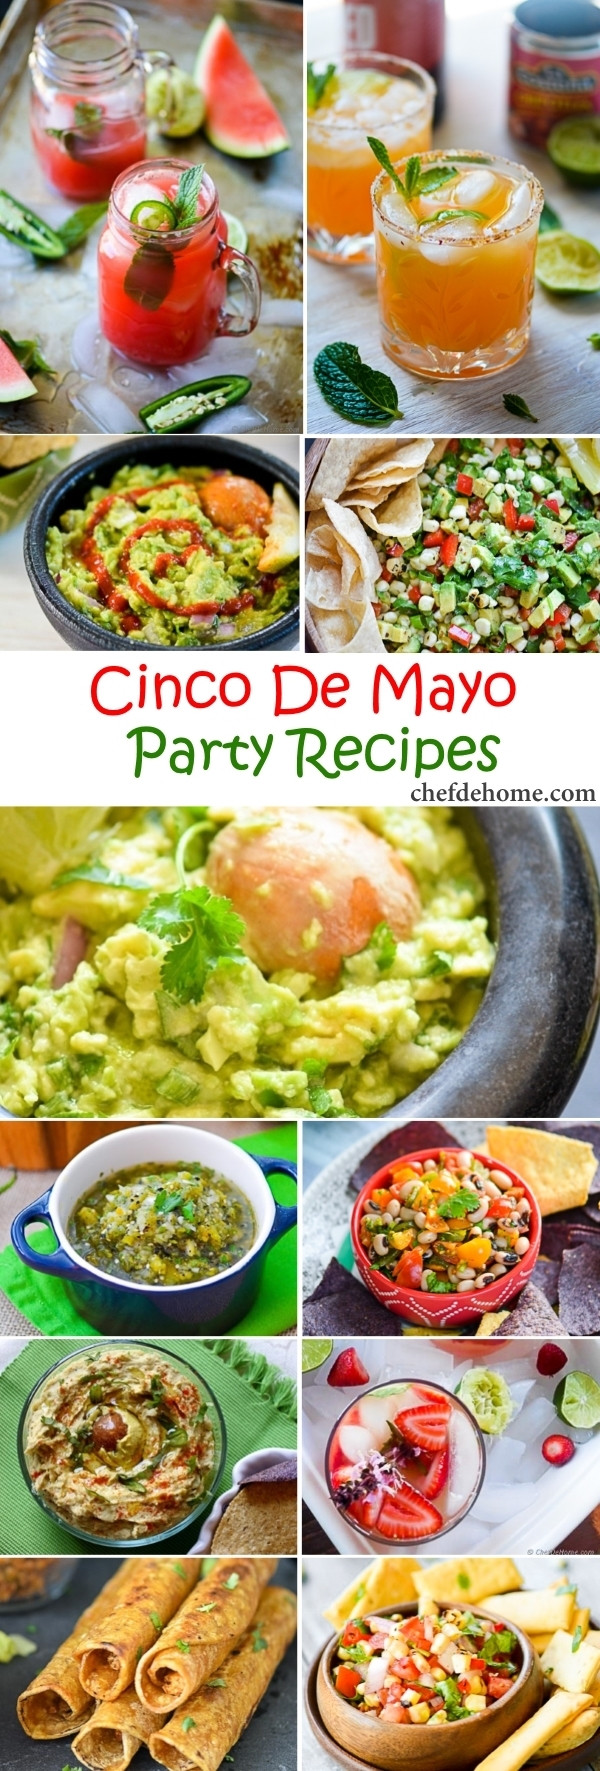 Mexican Food For Cinco De Mayo
 Easy Mexican Fiesta Cinco De Mayo Party Recipes Meals